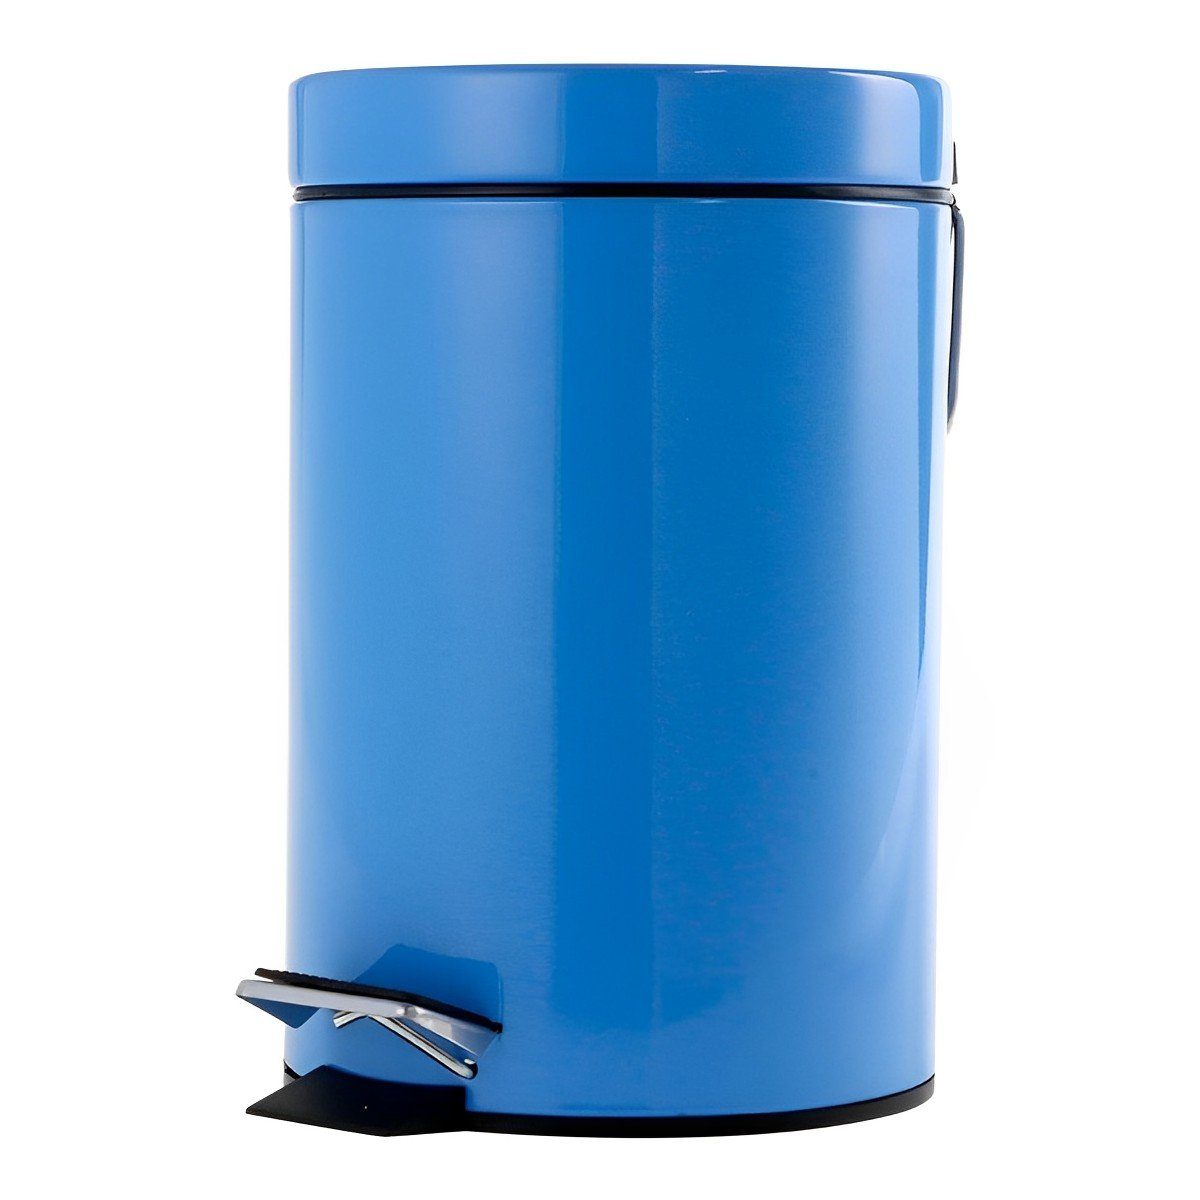 Schäfer Mülleimer Tretabfalleimer Büro Design 3 Liter Blau | Mülleimer